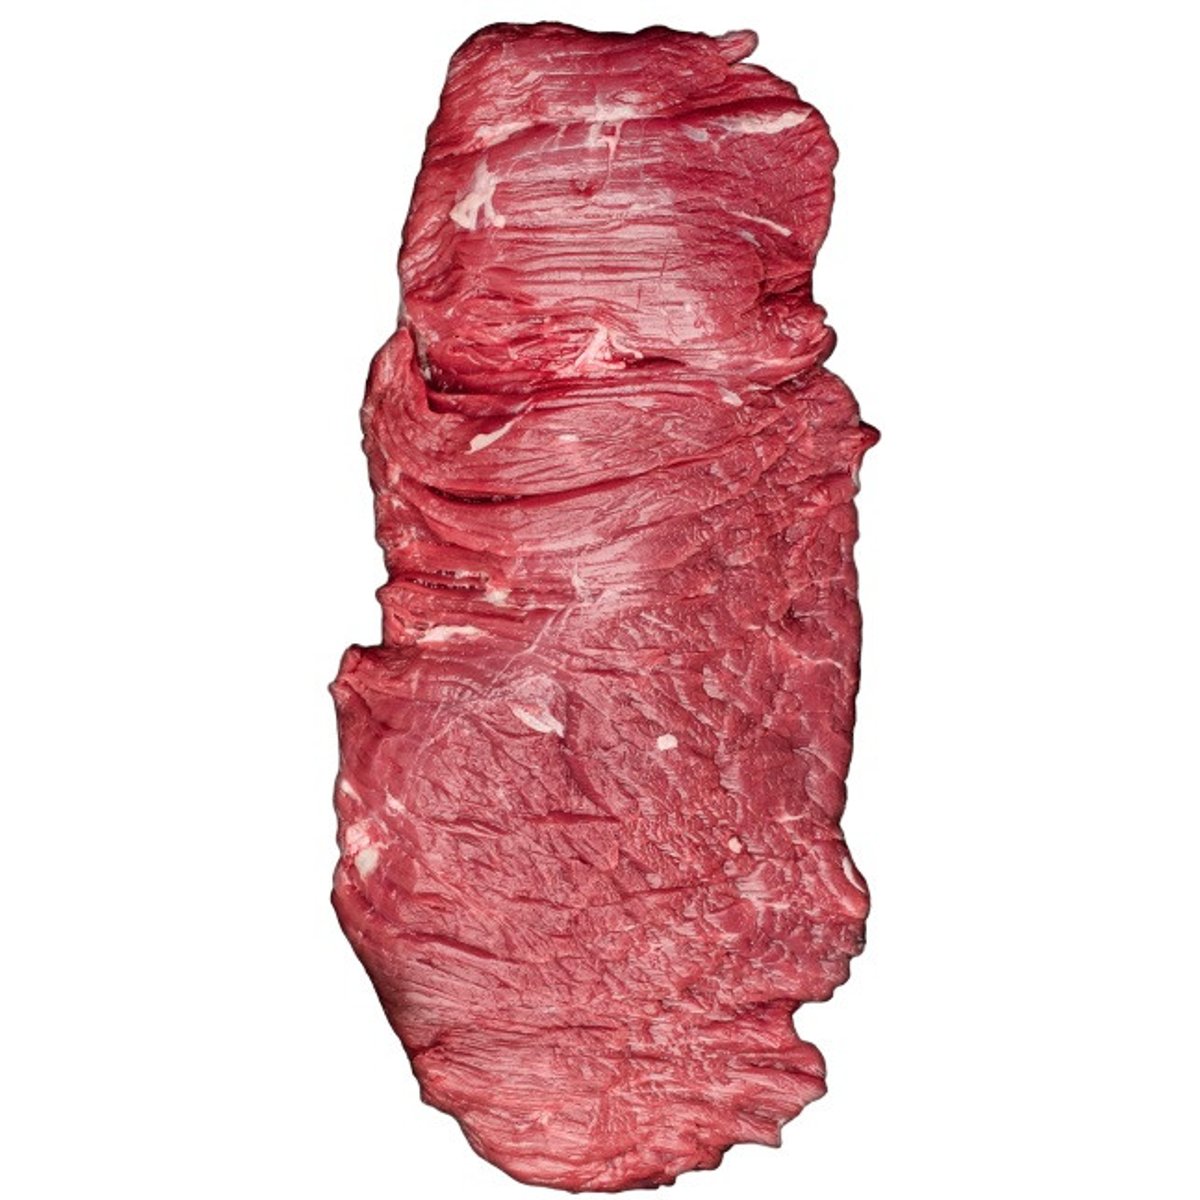 MeatPoint BIO Hanger Steak